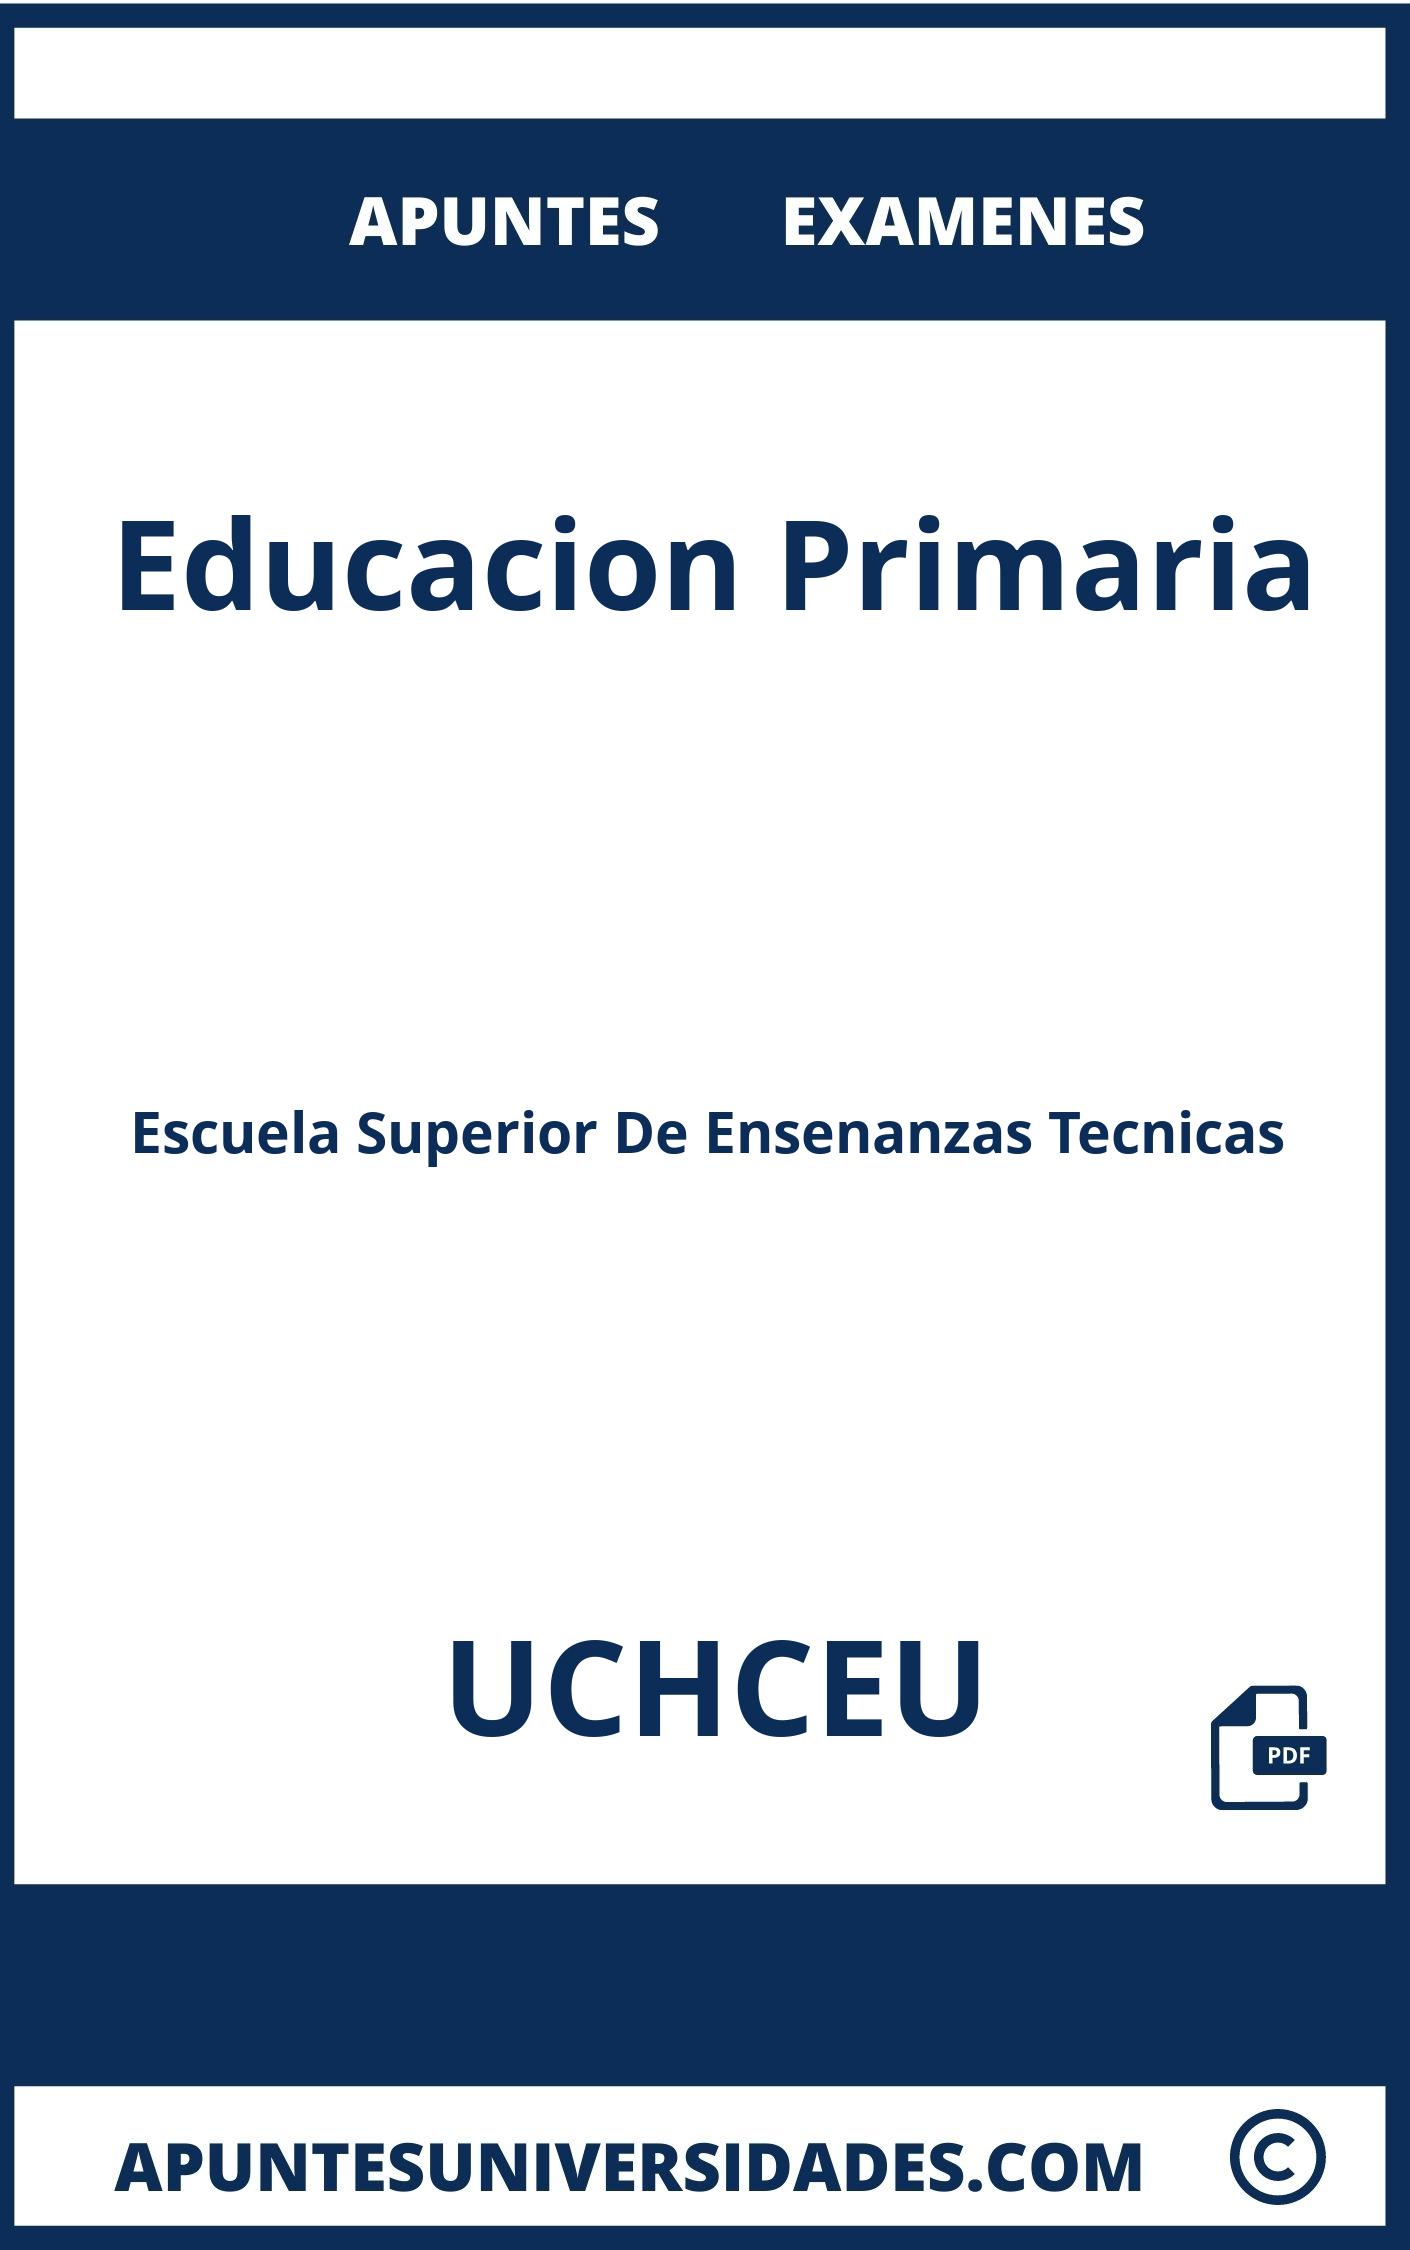 Apuntes y Examenes de Educacion Primaria UCHCEU